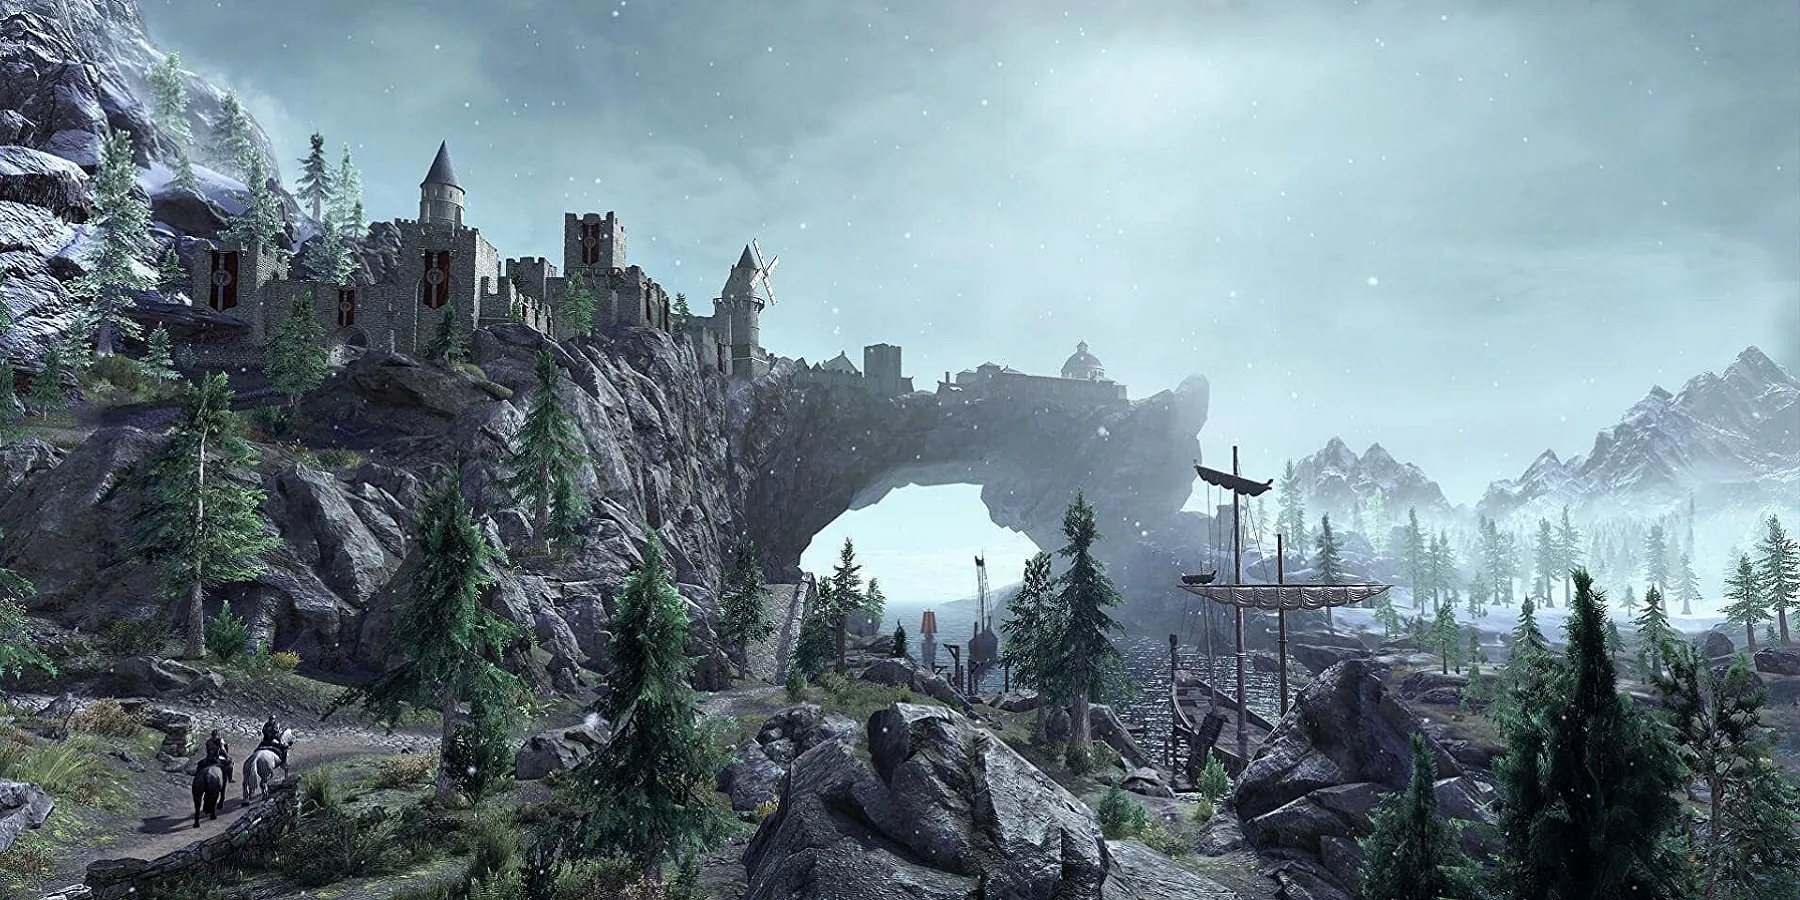 Изображение из Skyrim, на котором показан город Солитюд вдали, рядом с докаи.